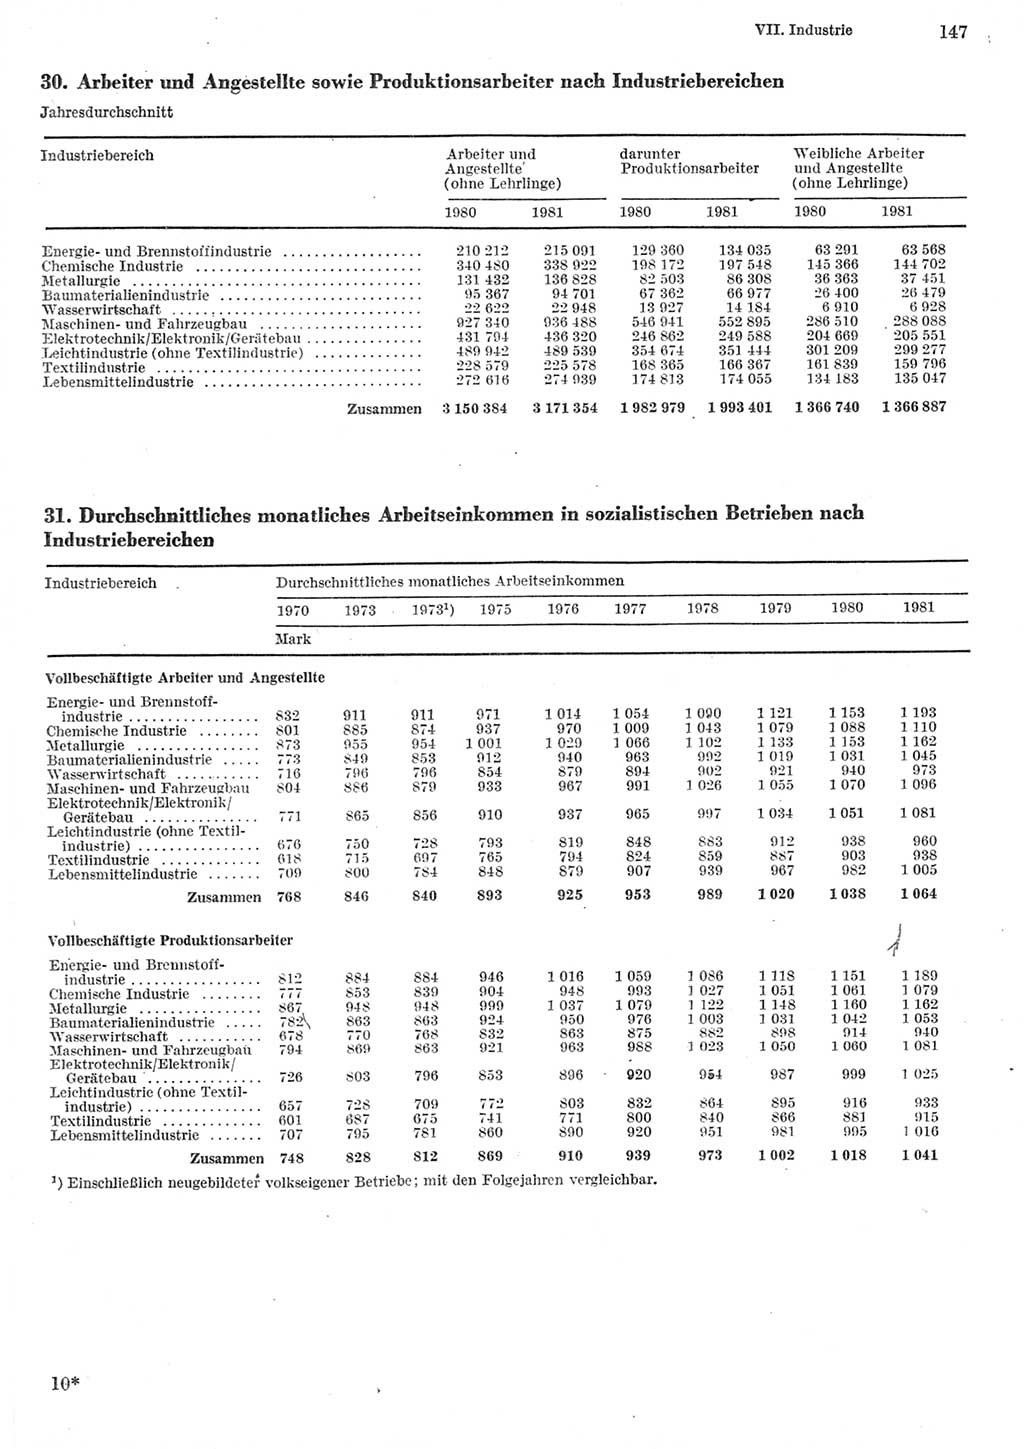 Statistisches Jahrbuch der Deutschen Demokratischen Republik (DDR) 1982, Seite 147 (Stat. Jb. DDR 1982, S. 147)